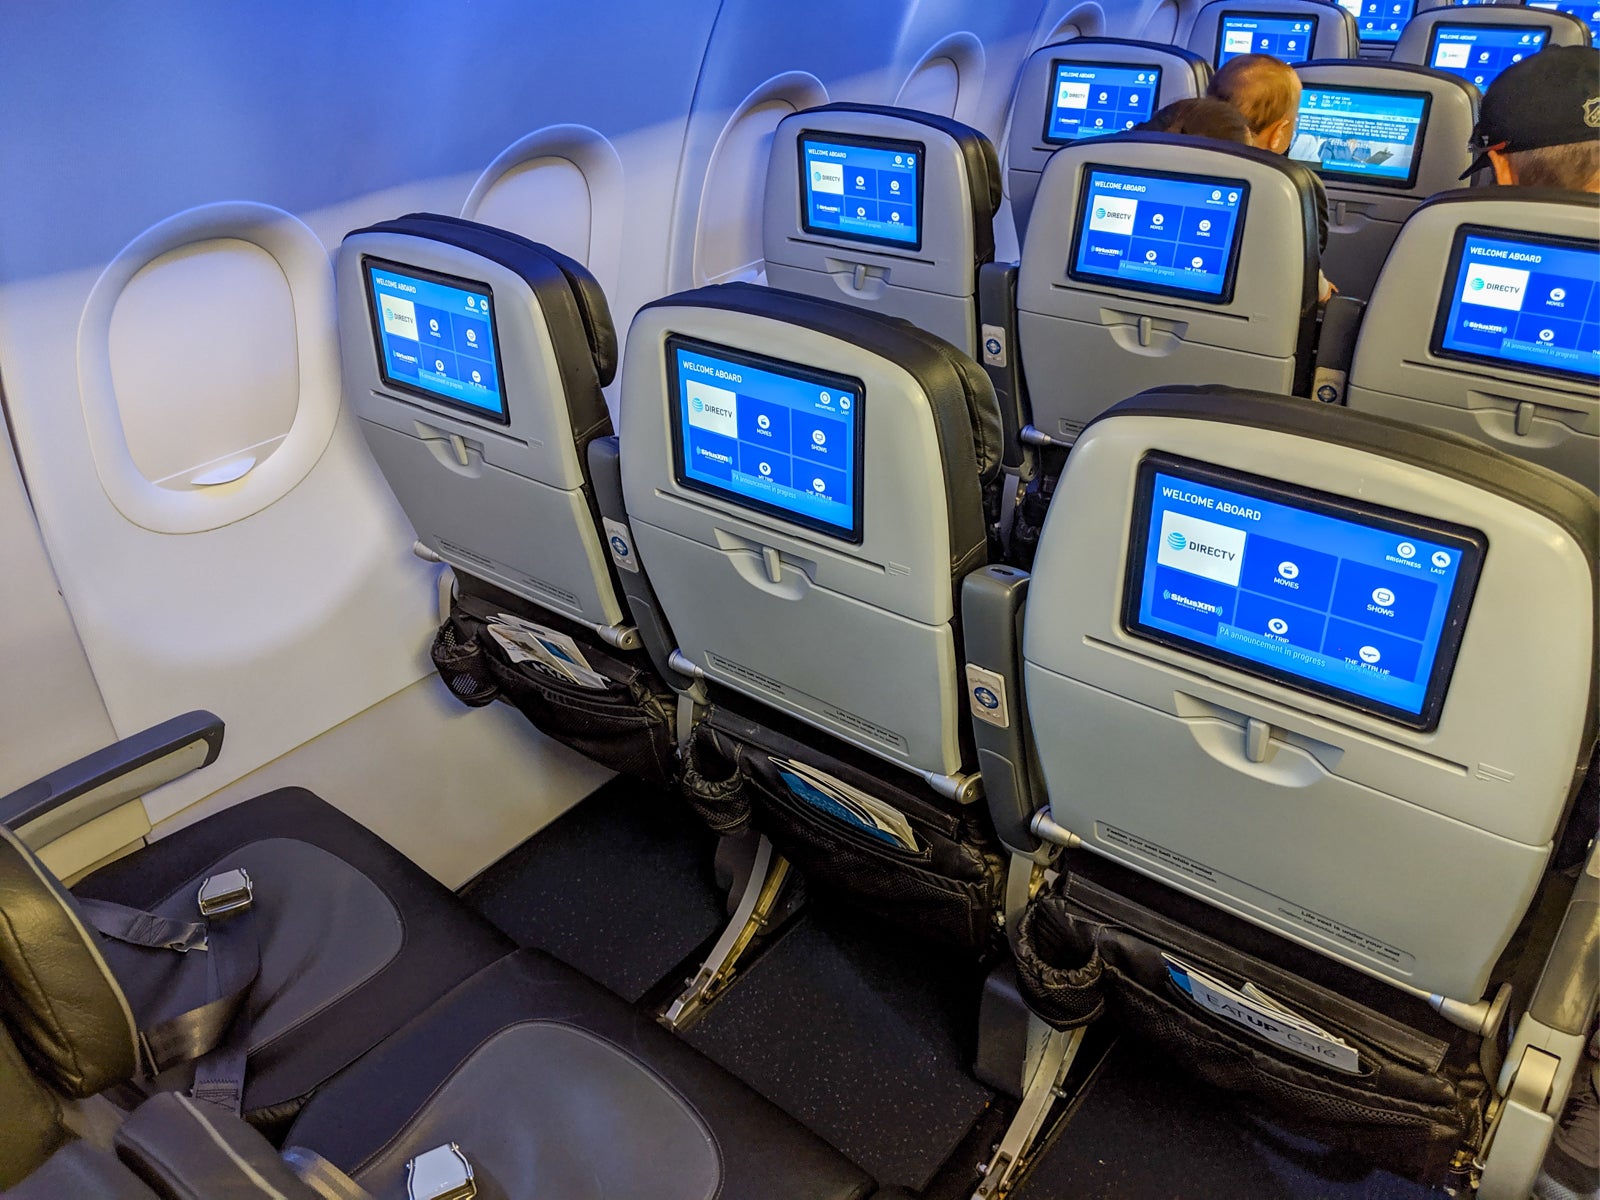 捷蓝航空(JetBlue)推动了其飞行娱乐业务的发展